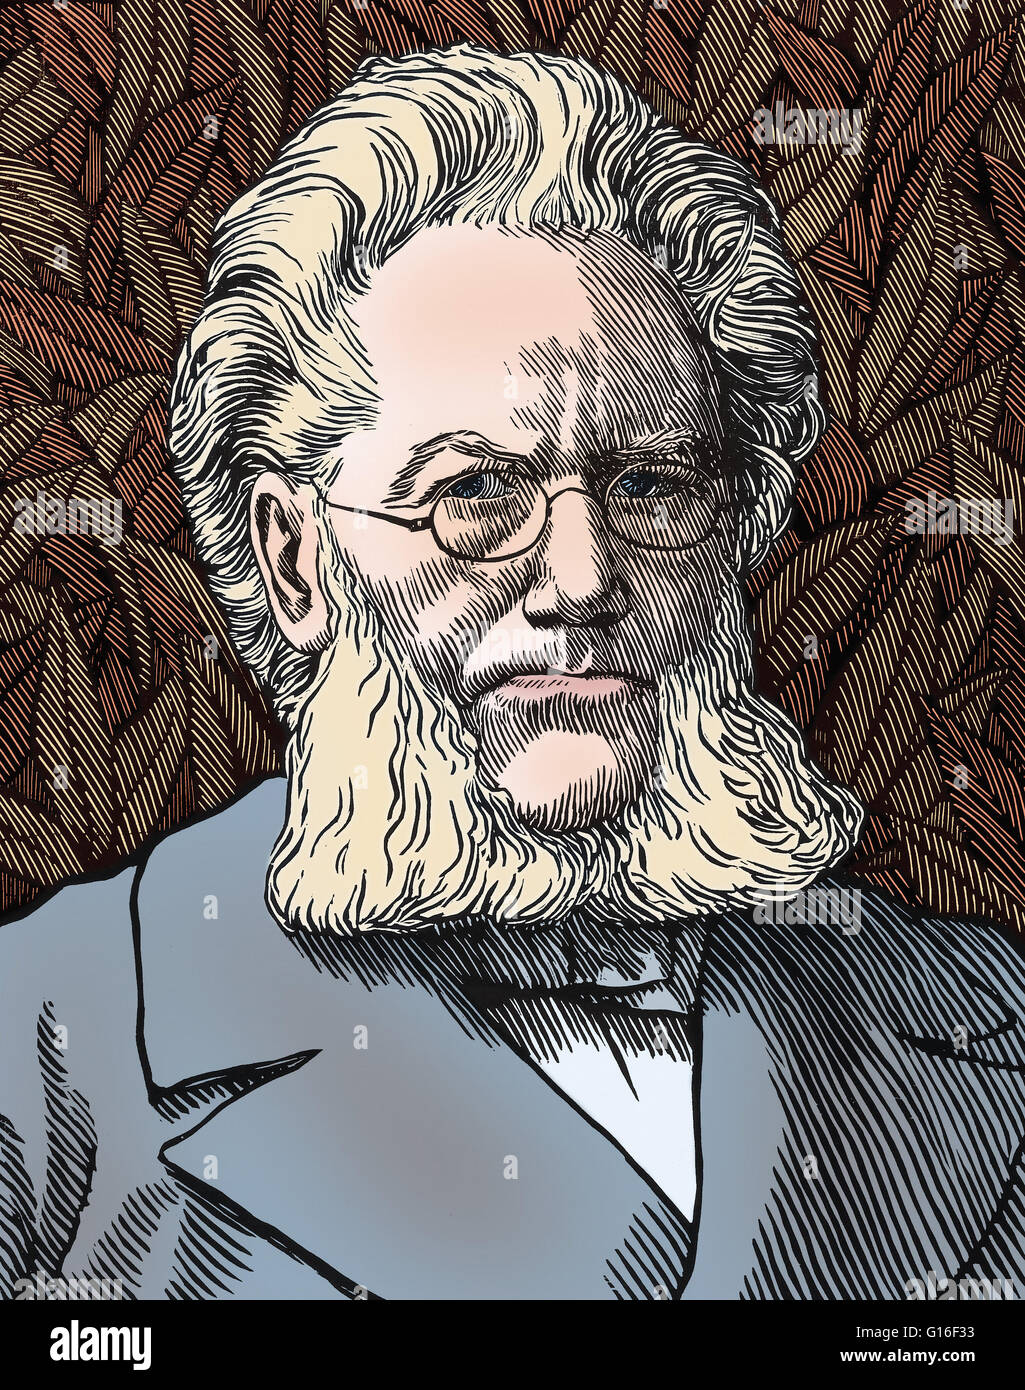 Porträt von Henrik Ibsen, ab 1899, des schottischen Künstlers Robert Bryden (1865-1939). Ibsen wurde eine große aus dem 19. Jahrhundert norwegischer Dramatiker, Theaterregisseur und Dichter. Er wird häufig als der Vater des Realismus bezeichnet und ist eines der Gründungsmitglieder der Moderne in Stockfoto